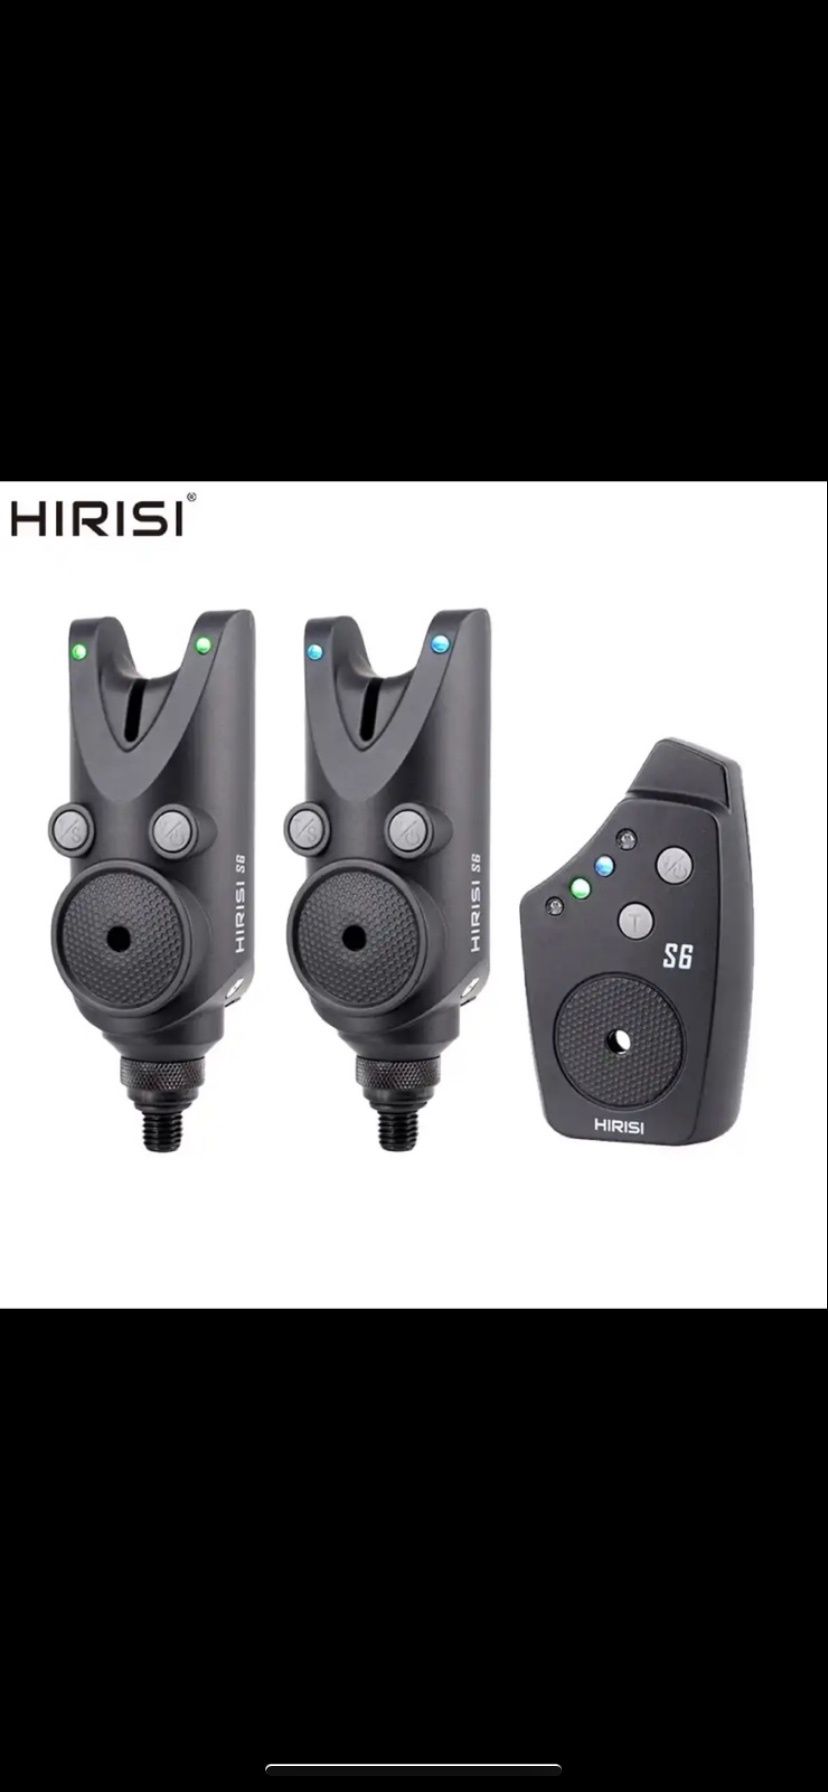 Продам нову модель сигналізаторів Hirisi S6  2+1  батарейки в комплект